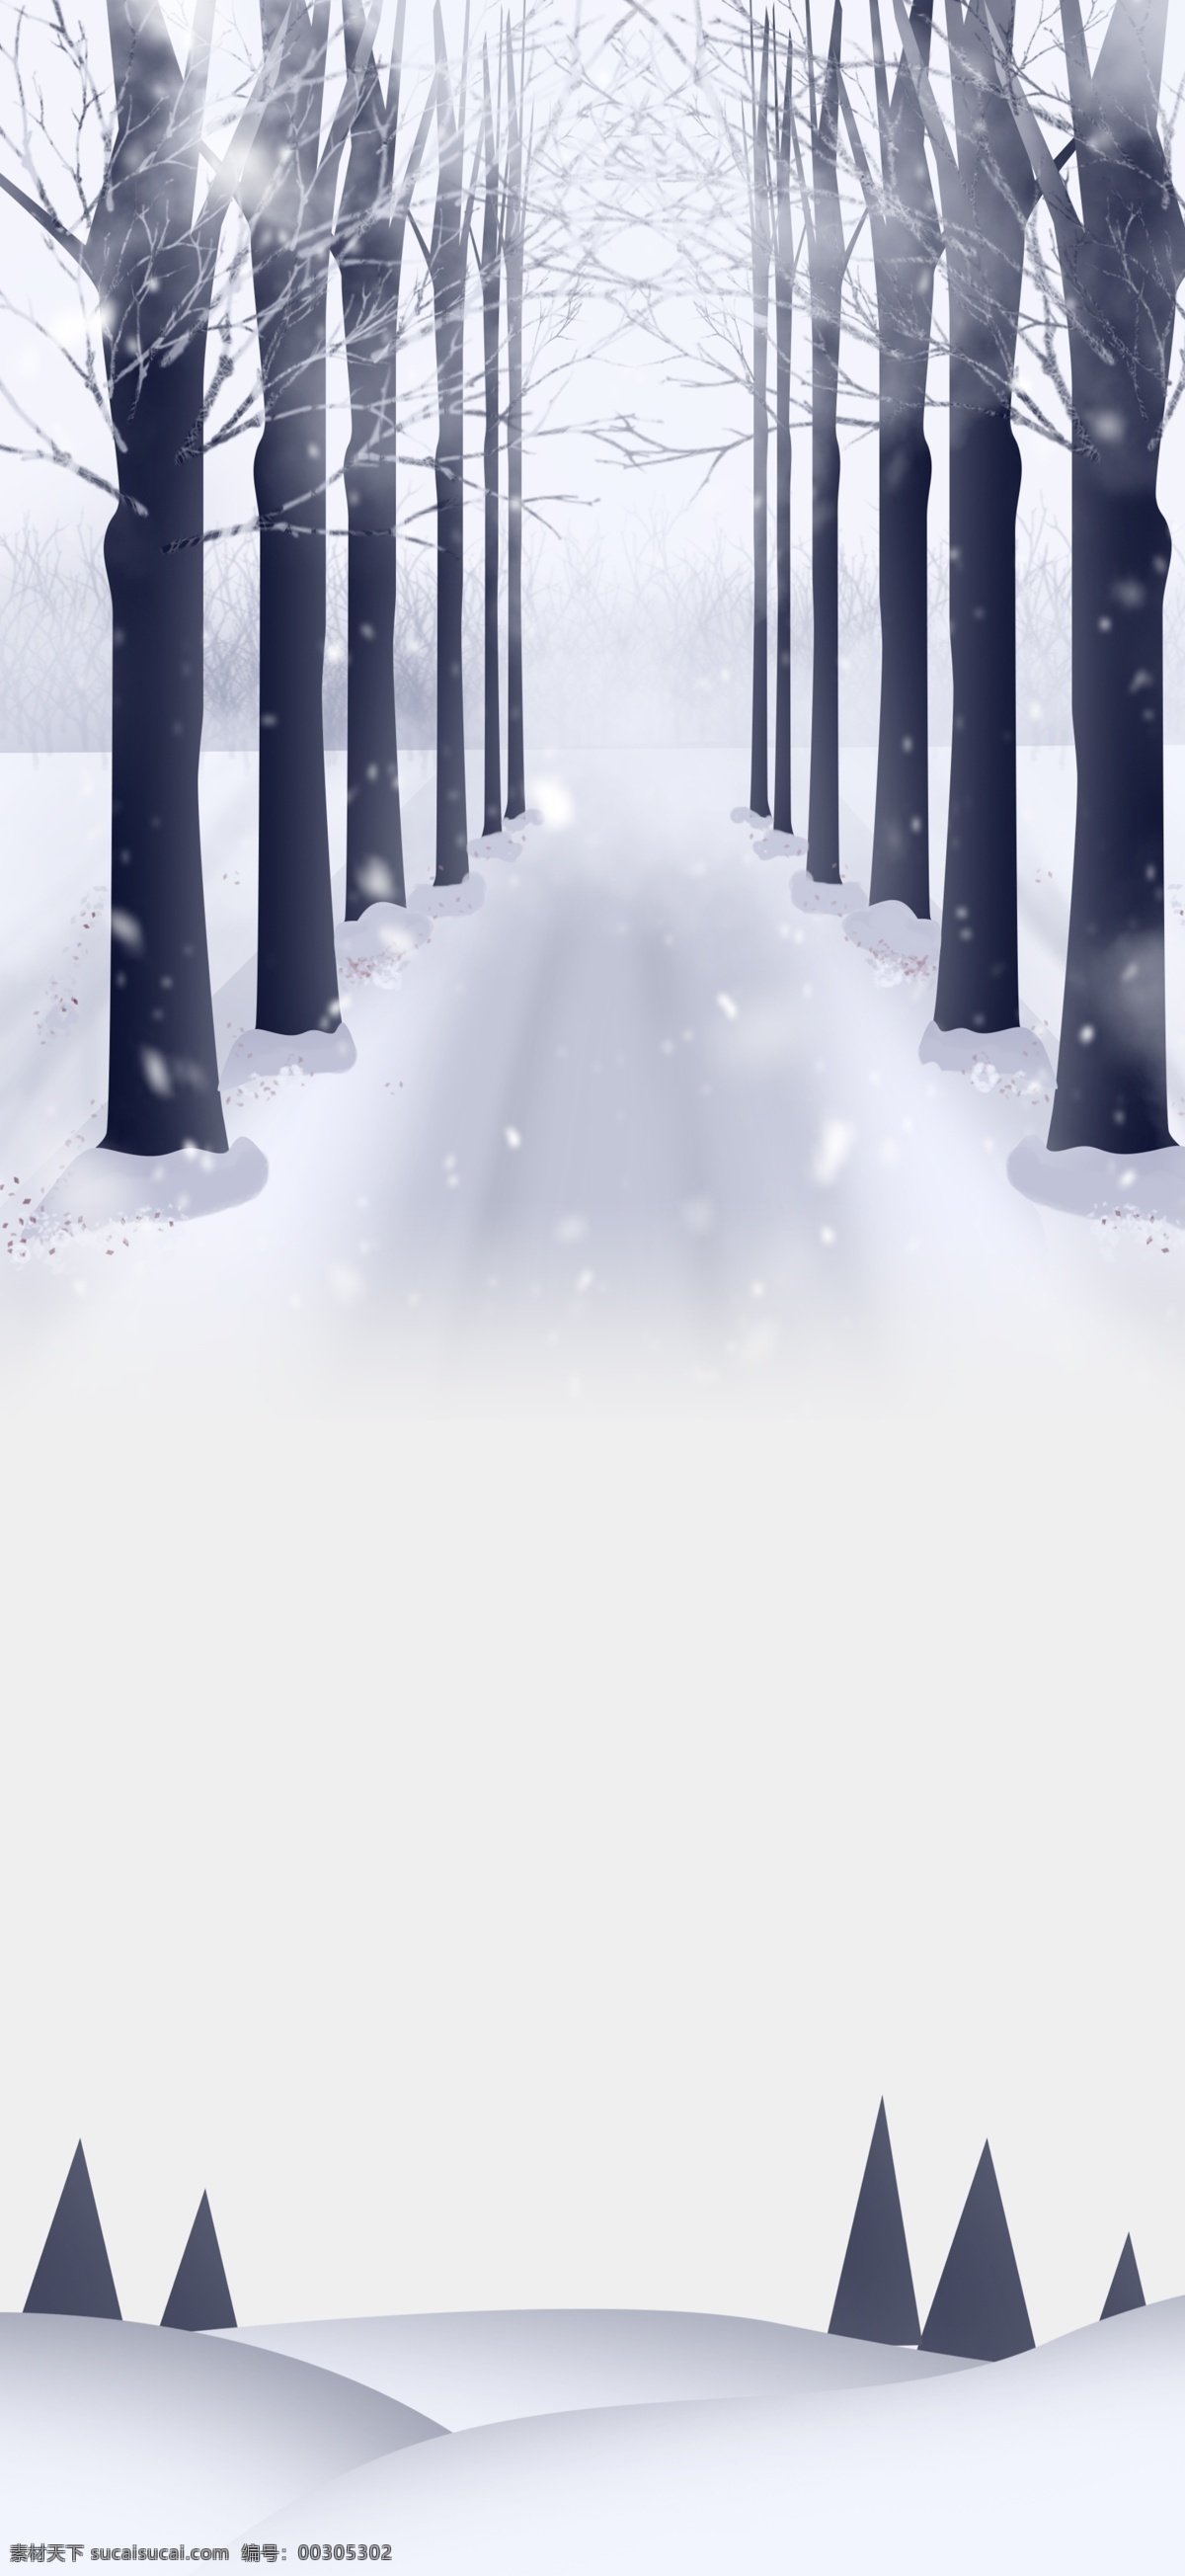 唯美 节气 小雪 雪地 树木 背景 冬至 下雪 雪花 背景设计 冬天背景 唯美雪地 雪景 彩绘背景 大寒背景